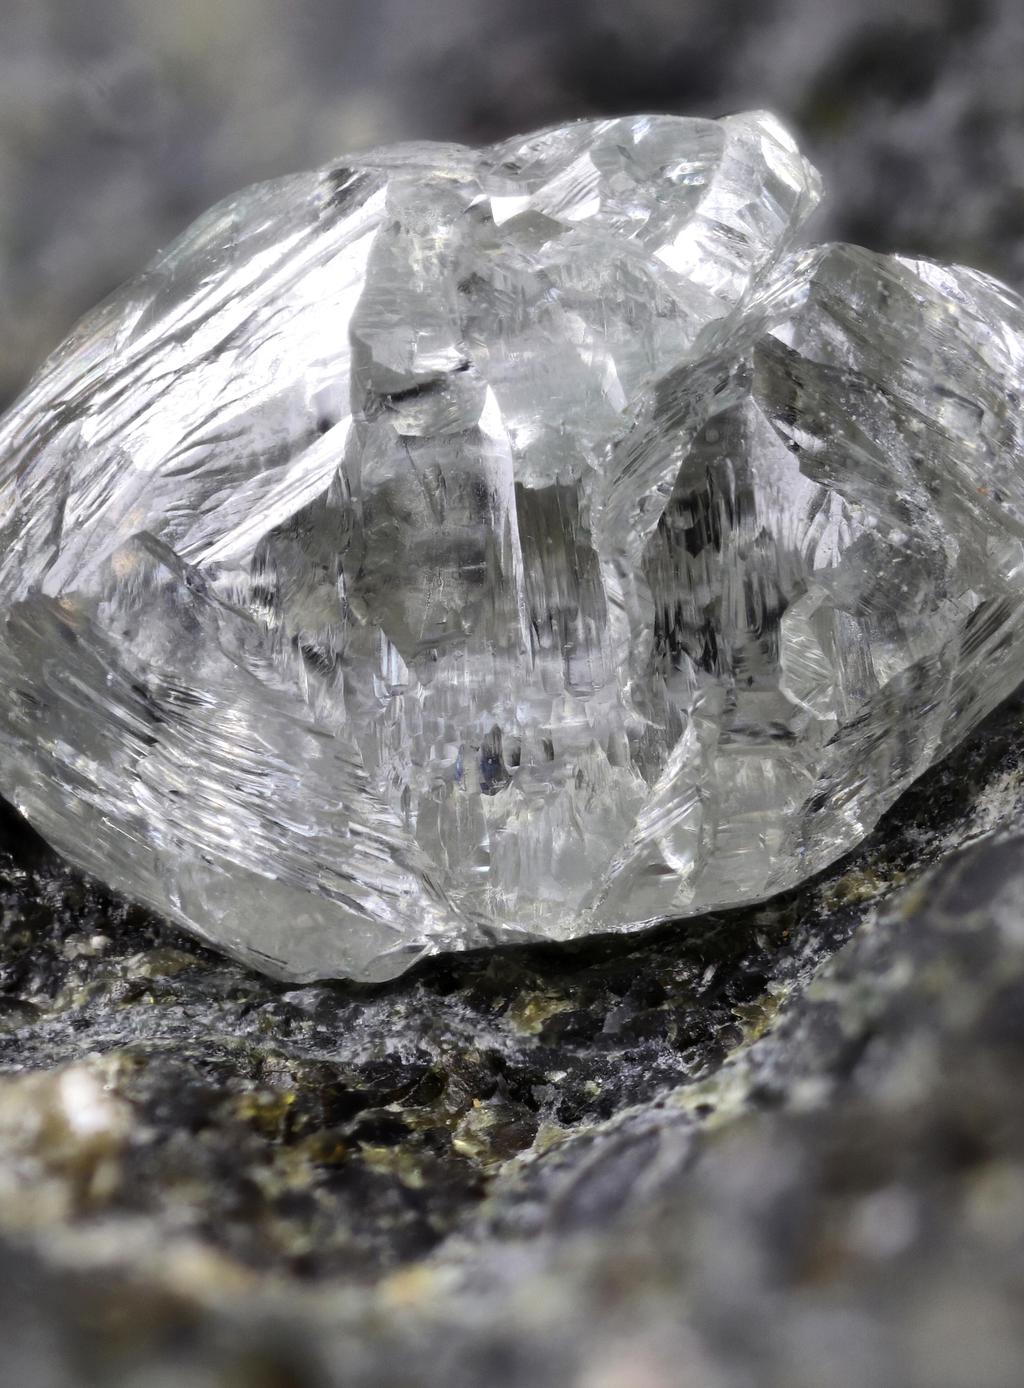 Milliárdok egy darab szénből. A gyémánt kialakulásához egyedülálló feltételek szükségesek: az adott földkéreg megfelelő széntartalma, magas nyomás és hőmérséklet.